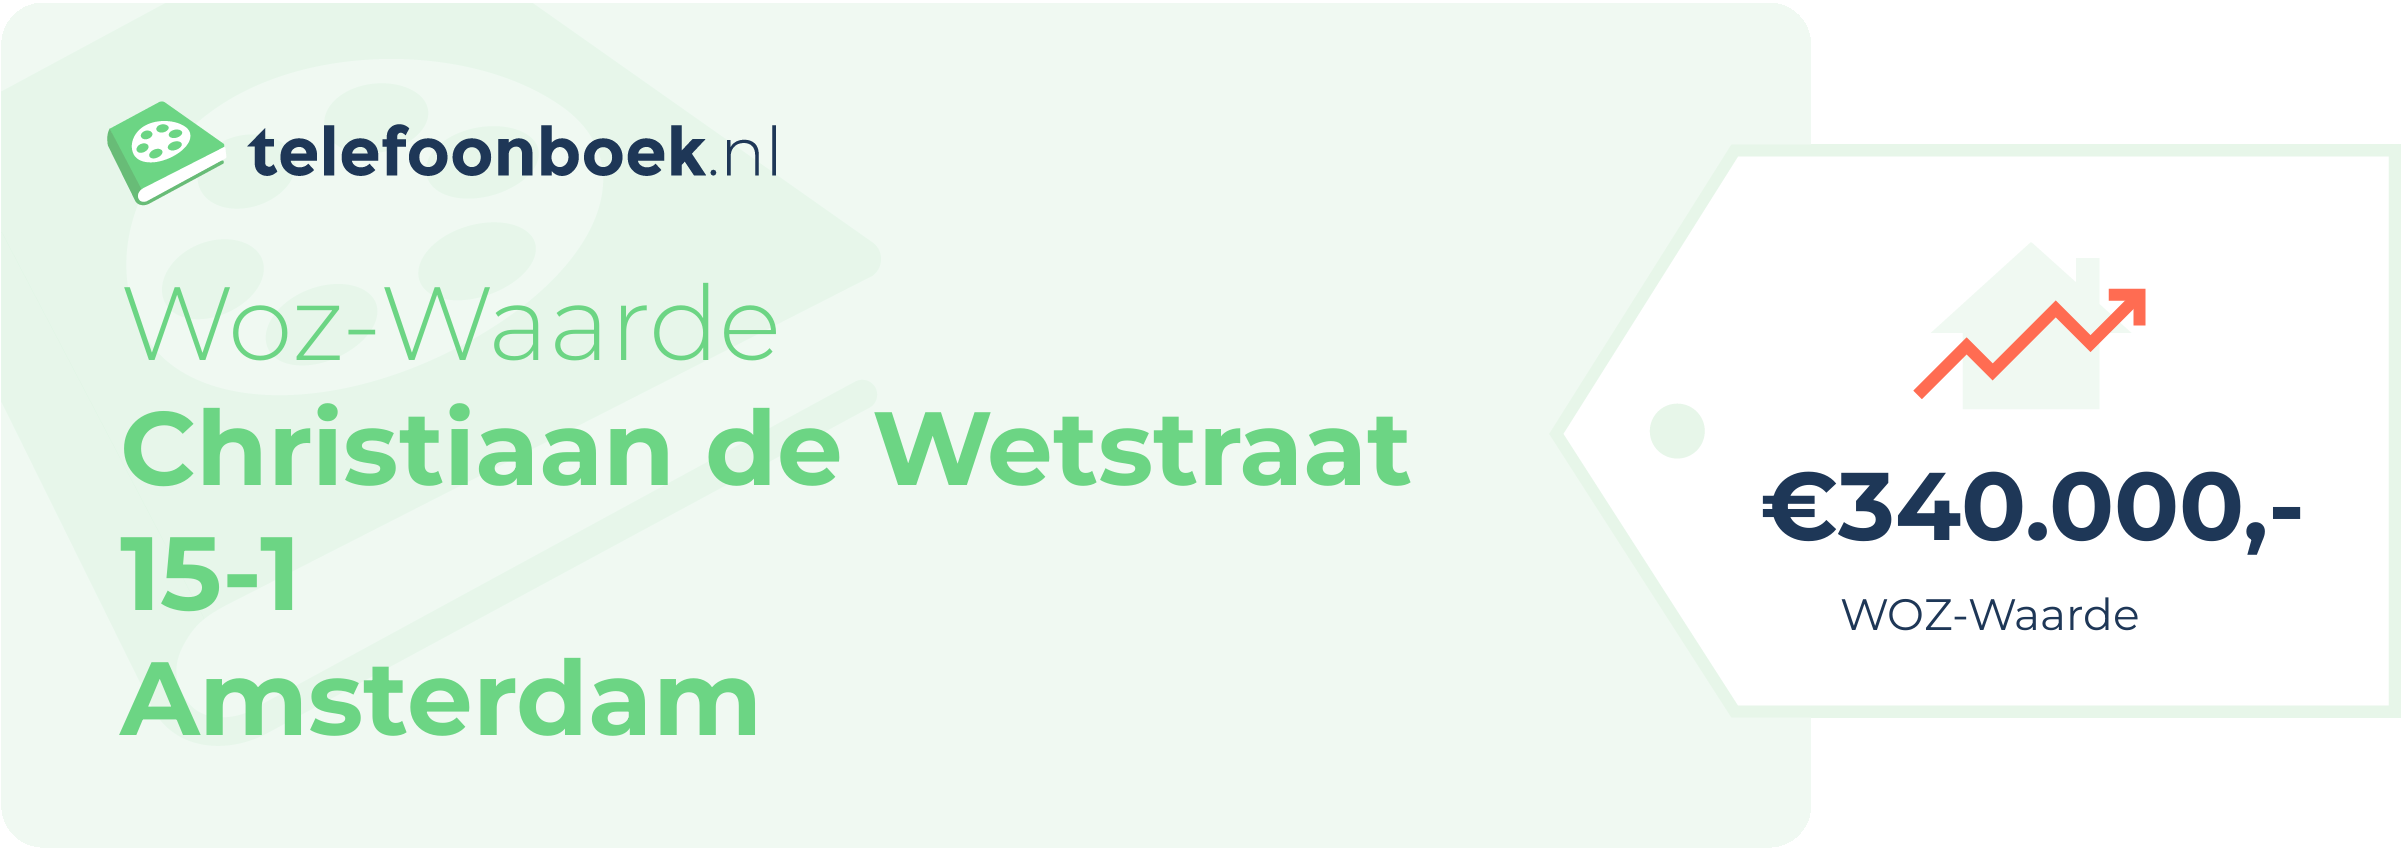 WOZ-waarde Christiaan De Wetstraat 15-1 Amsterdam